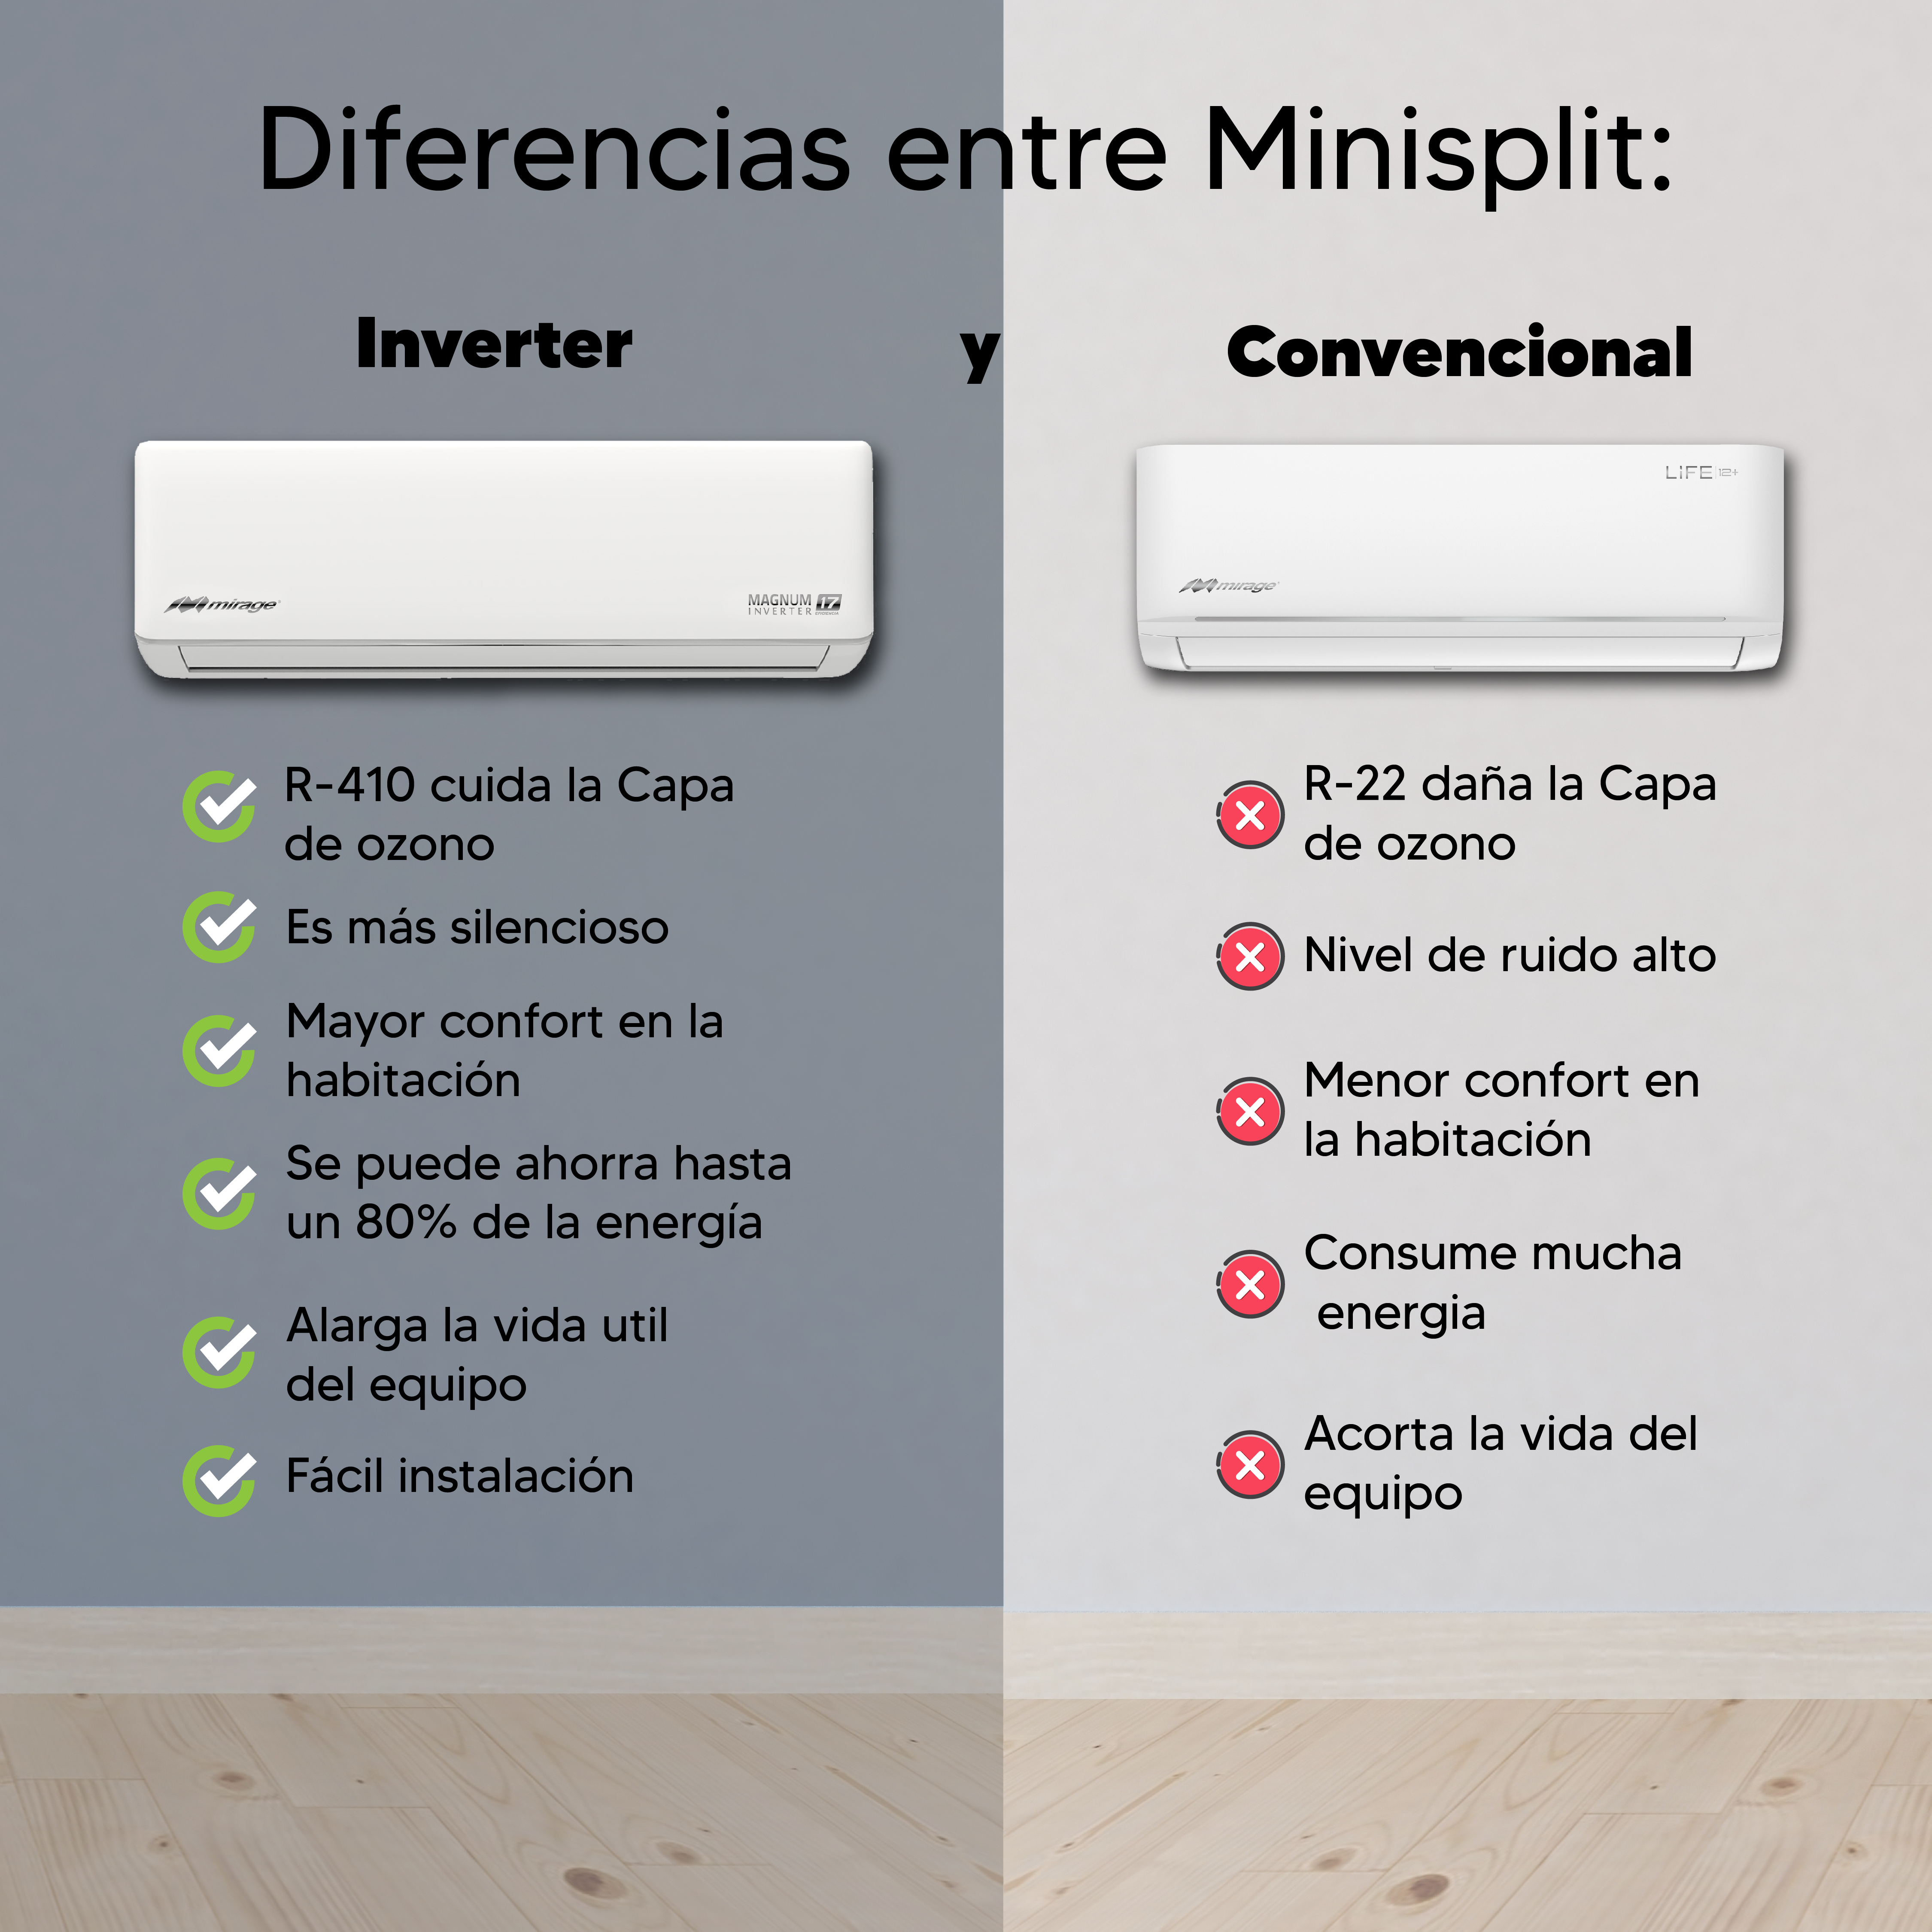 Diferencias entre un minisplit tradicional y un minisplit inverter